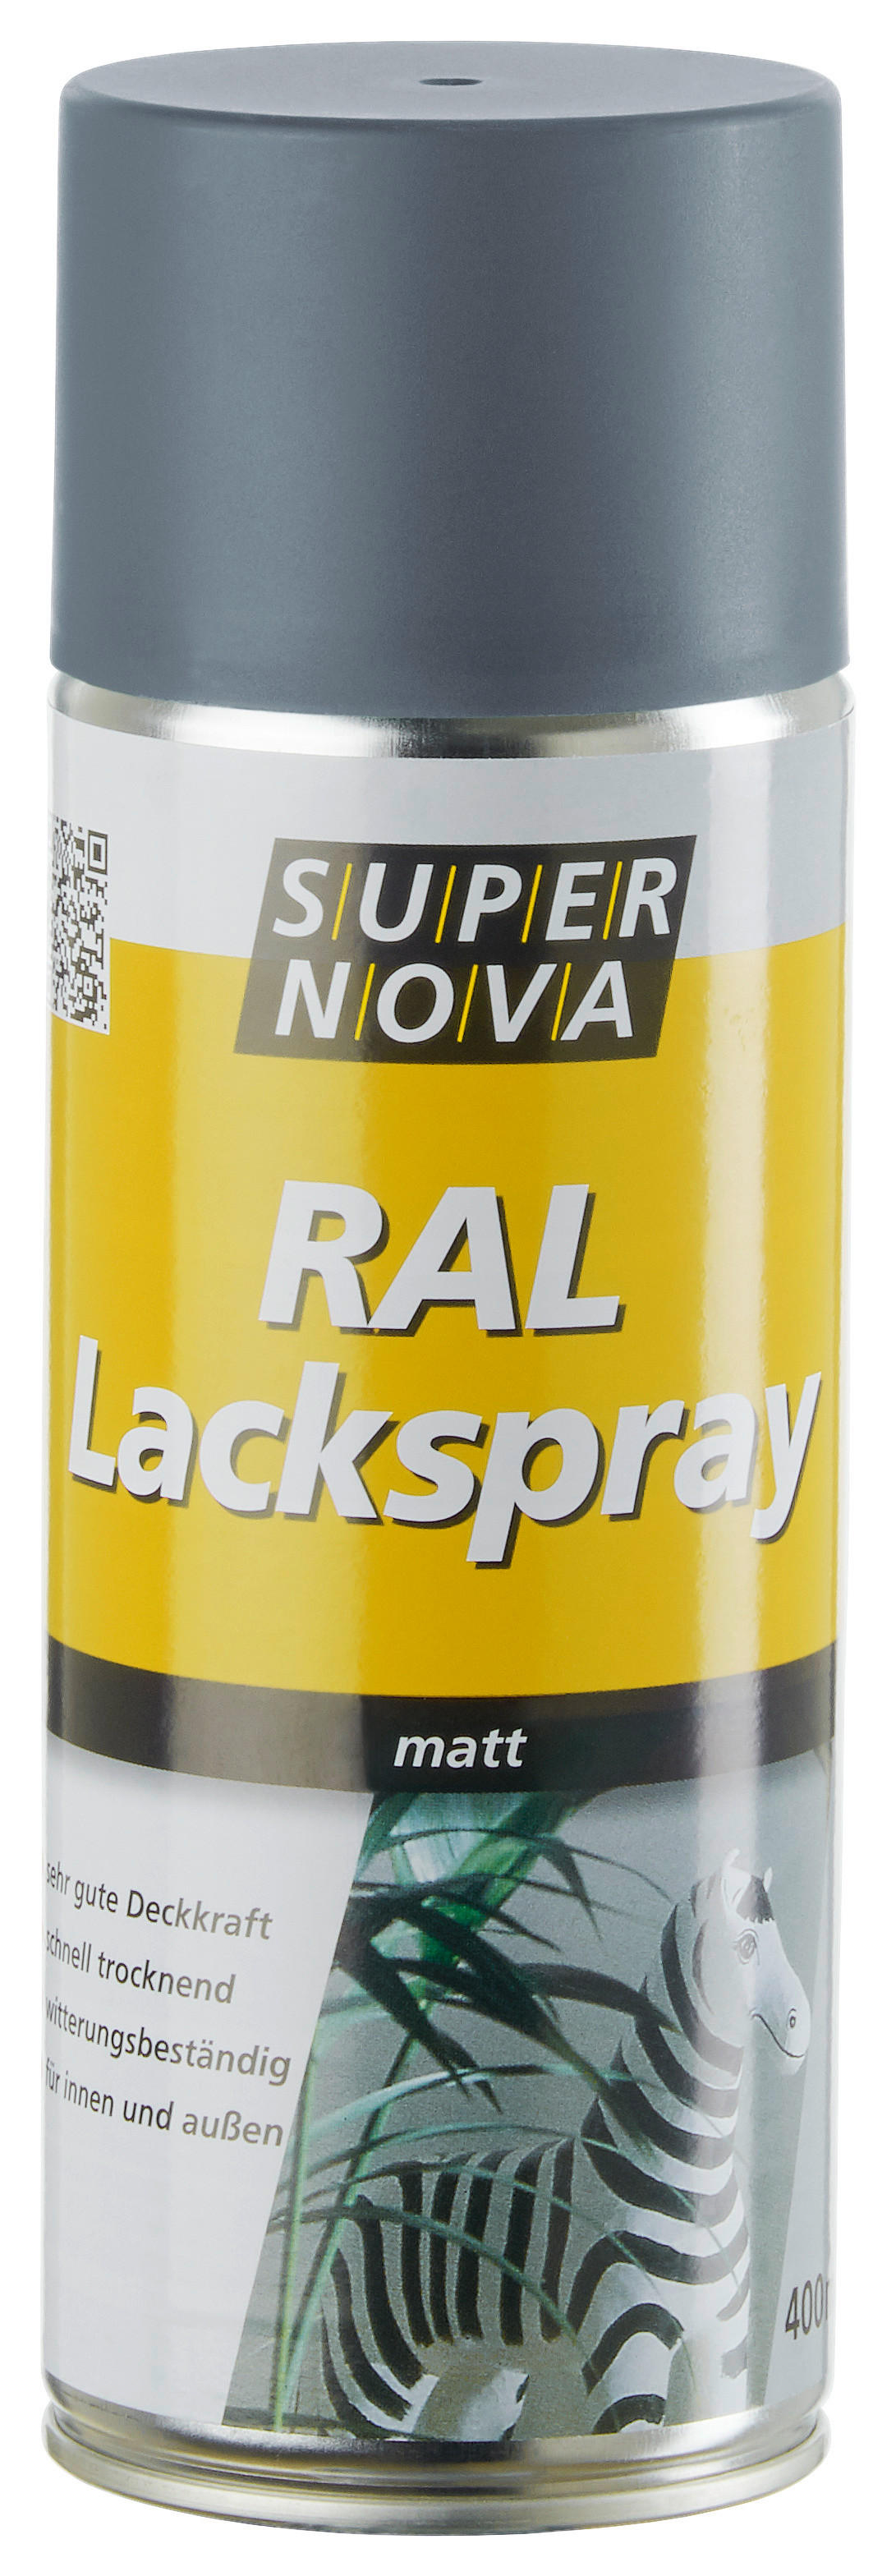 Super-Nova Lackspray anthrazit matt ca. 0,4 l Lackspray 400ml - anthrazit (400ml)